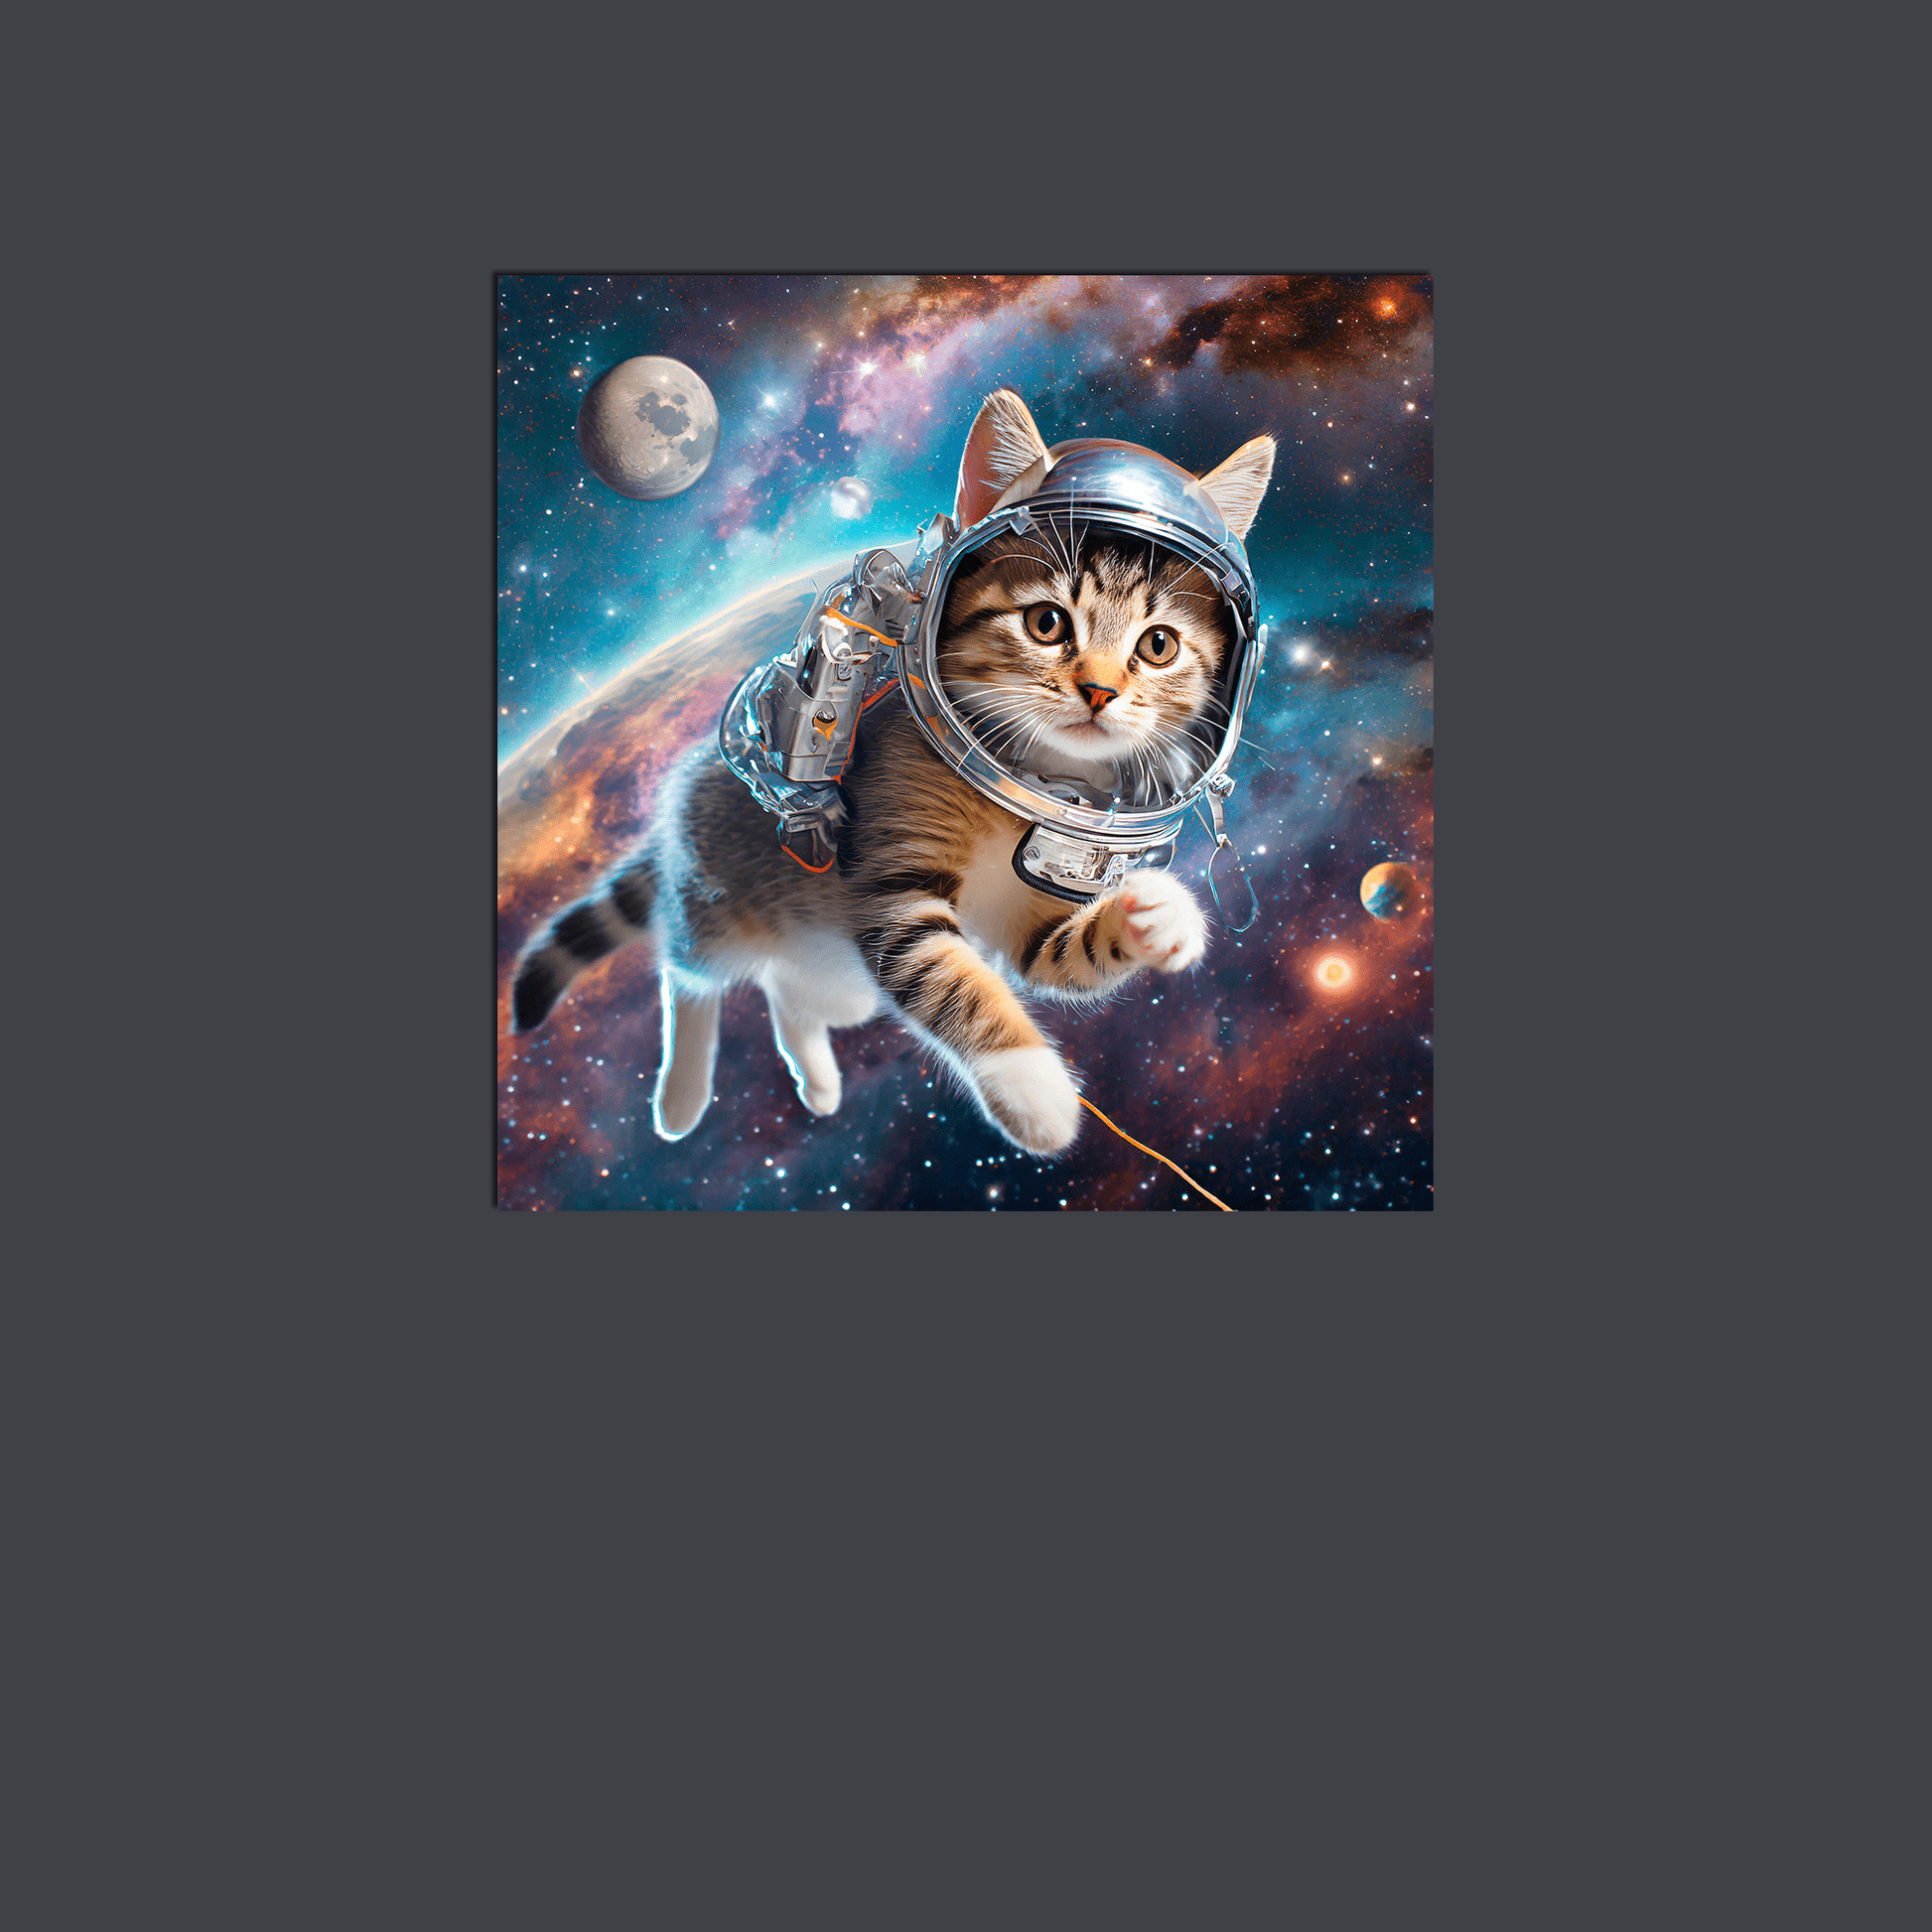 Space Kitty Chasing Cosmic String - Metal Poster - Premium Metal Print